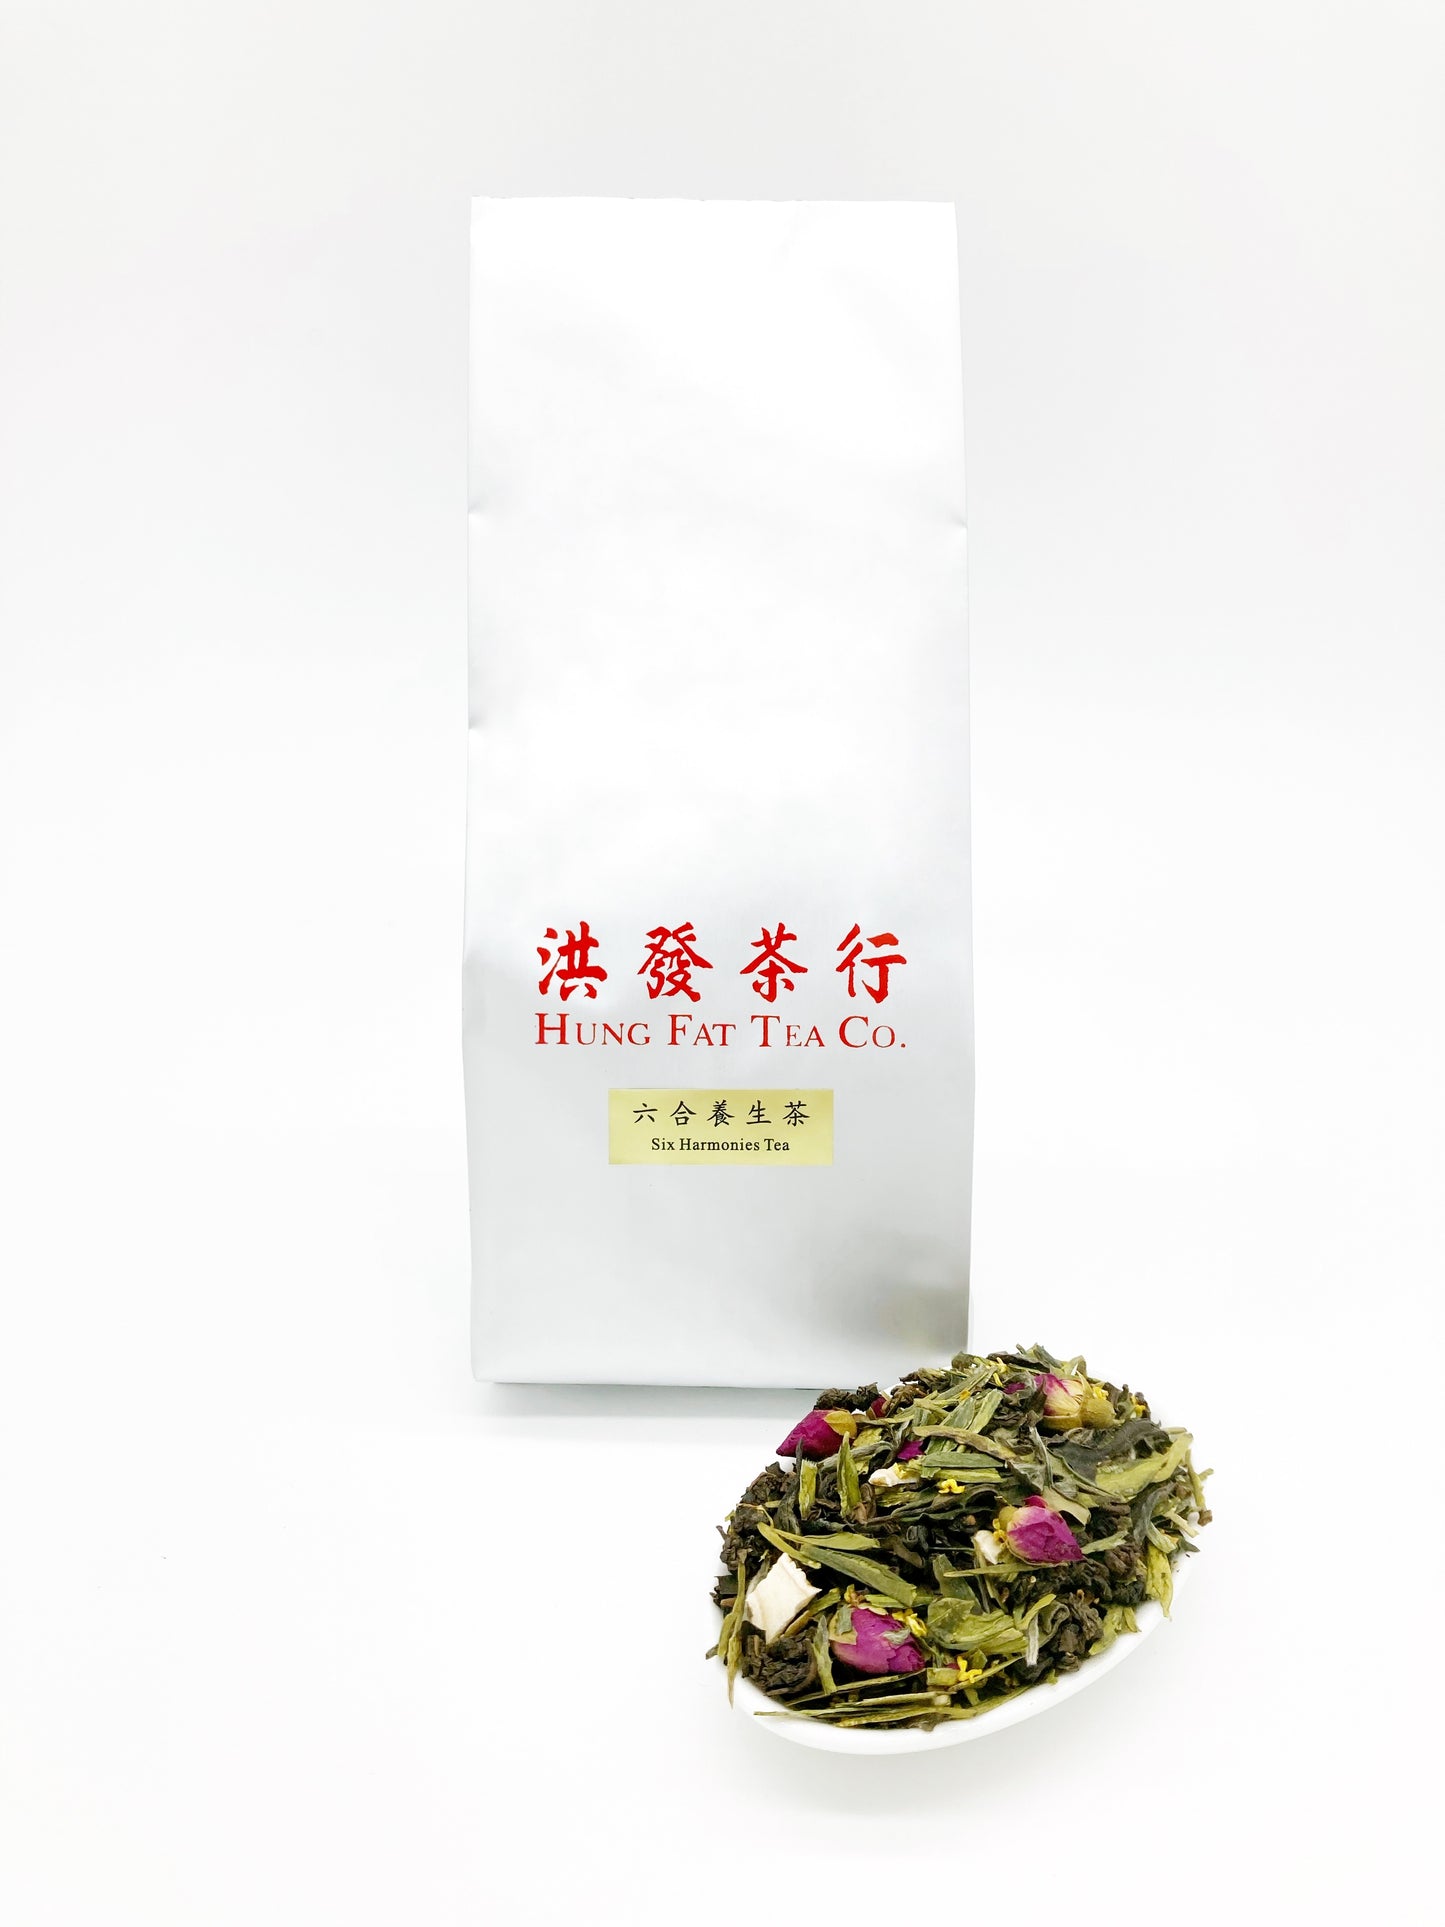 Flower tea - six harmonies tea in bag